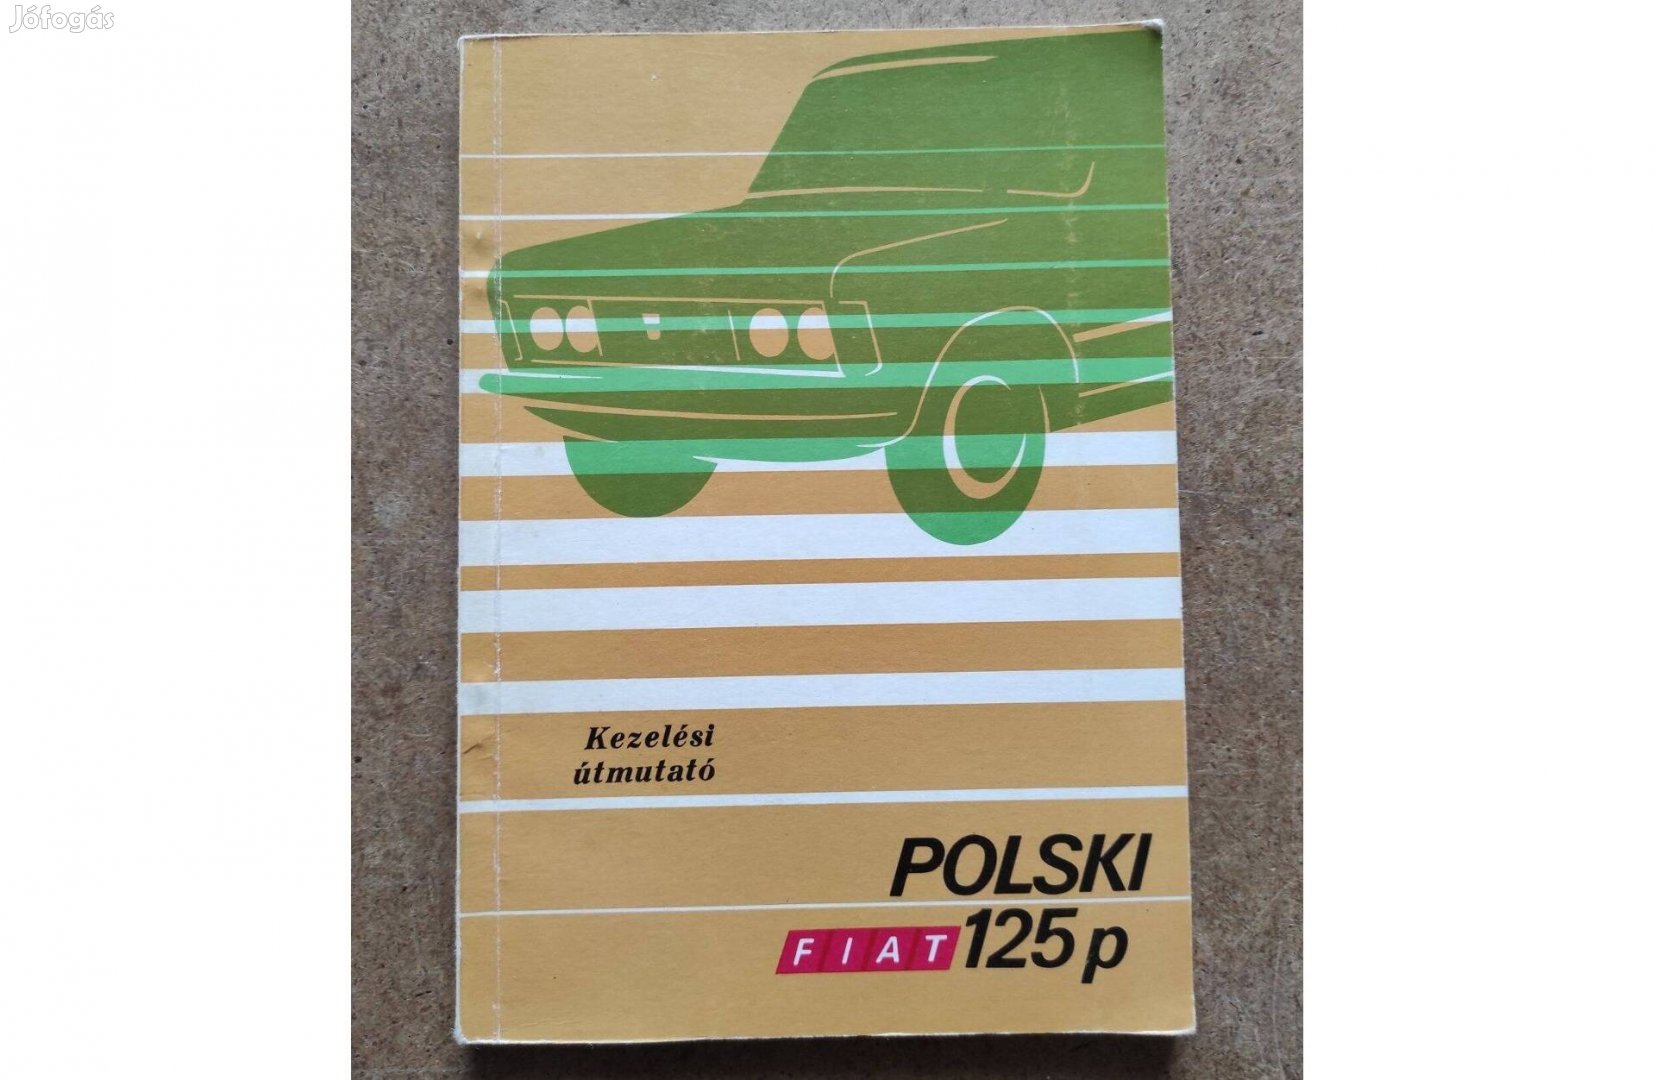 Polski Fiat 125 p kezelési utastás